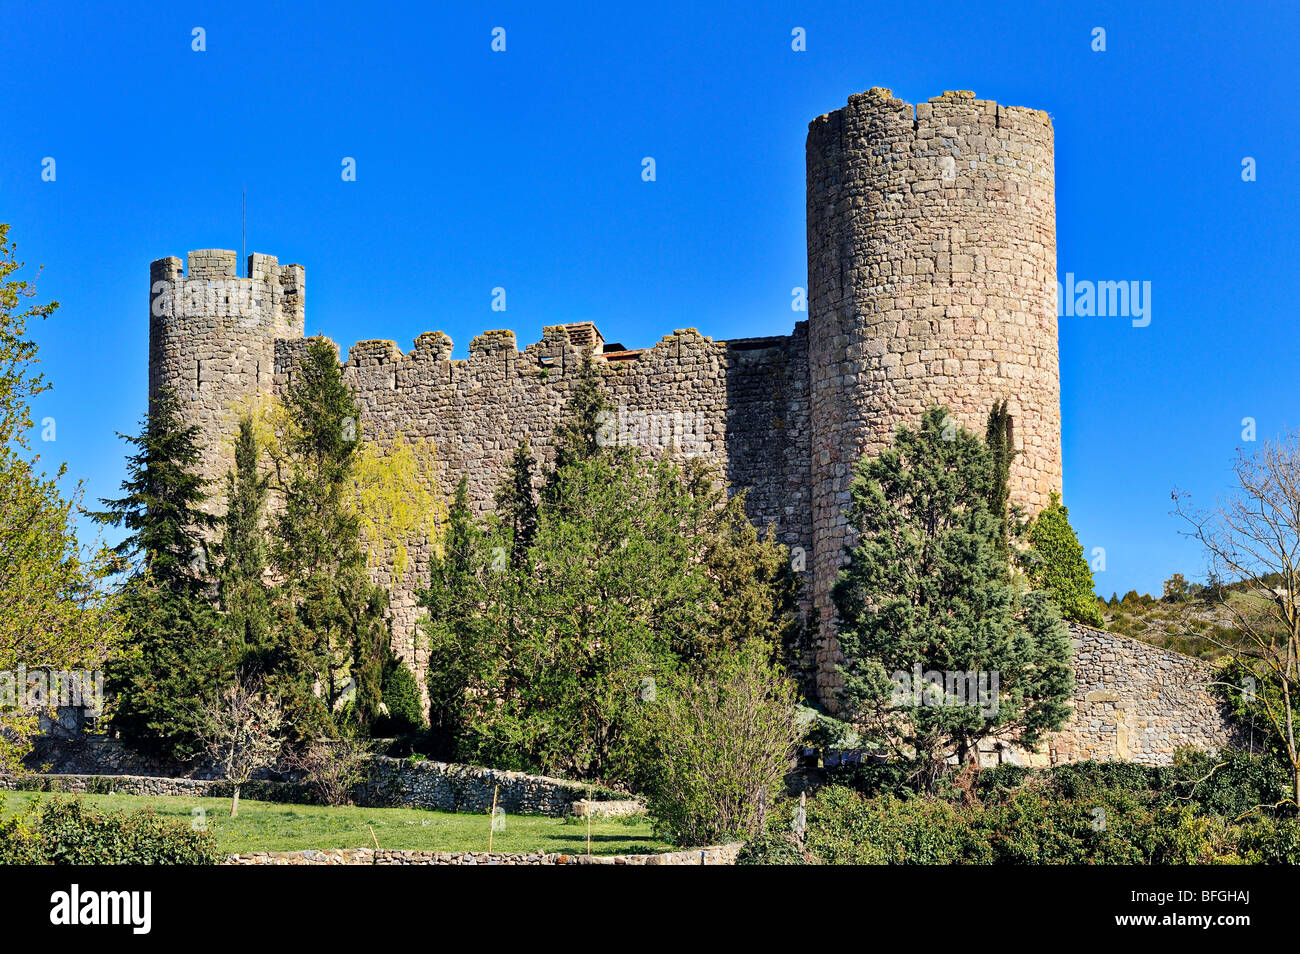 Le château à Villerouge-Termenes, Languedoc Roussillon, France. Banque D'Images